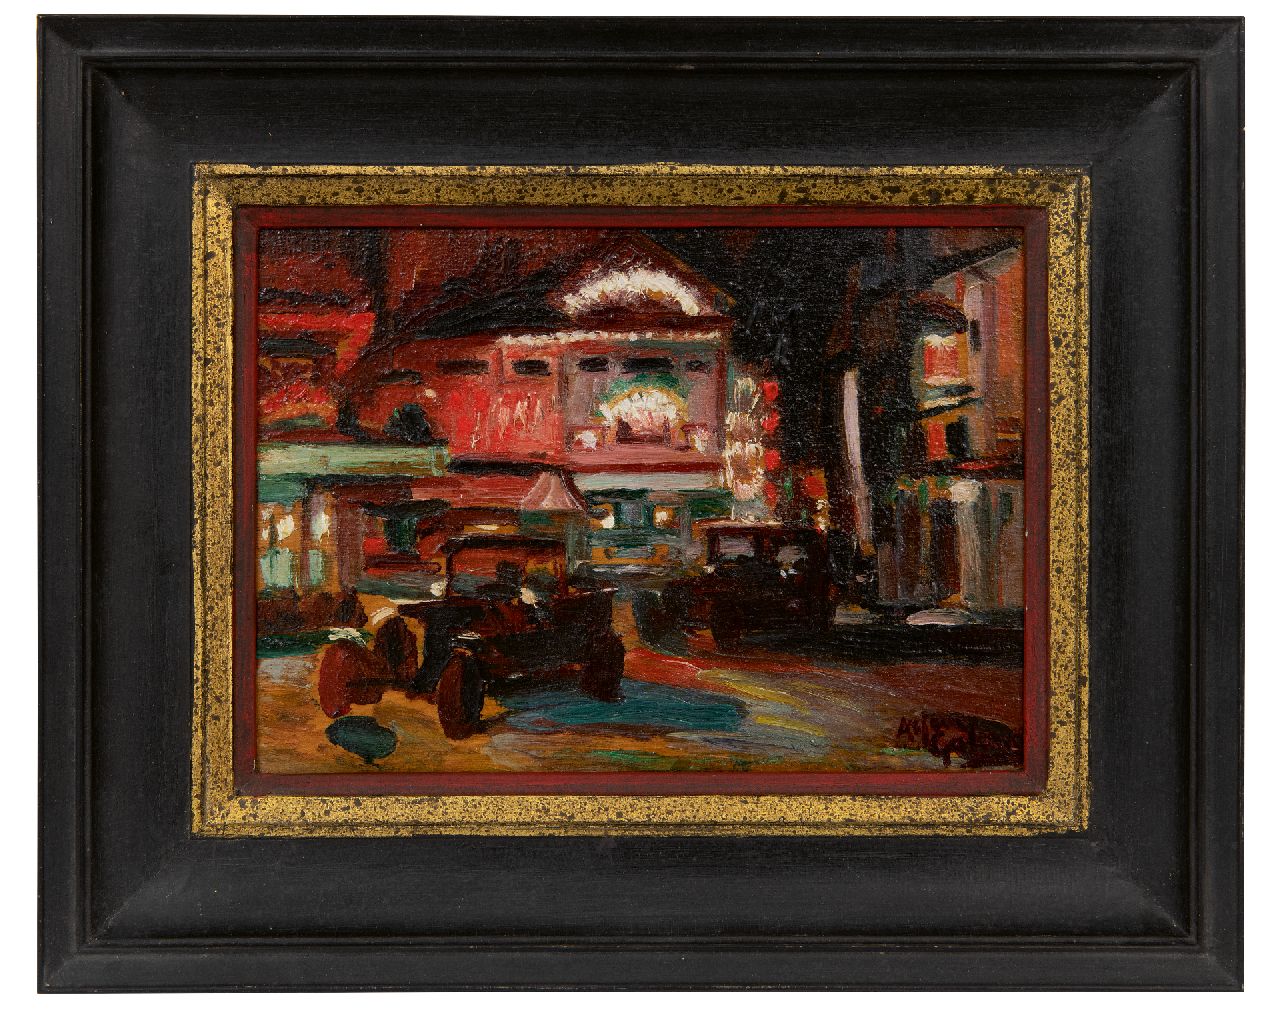 Galema A.  | Arjen Galema | Schilderijen te koop aangeboden | Place Pigalle in Parijs bij avond, olieverf op paneel 15,8 x 22,0 cm, gesigneerd rechtsonder en te dateren ca. 1918-1925